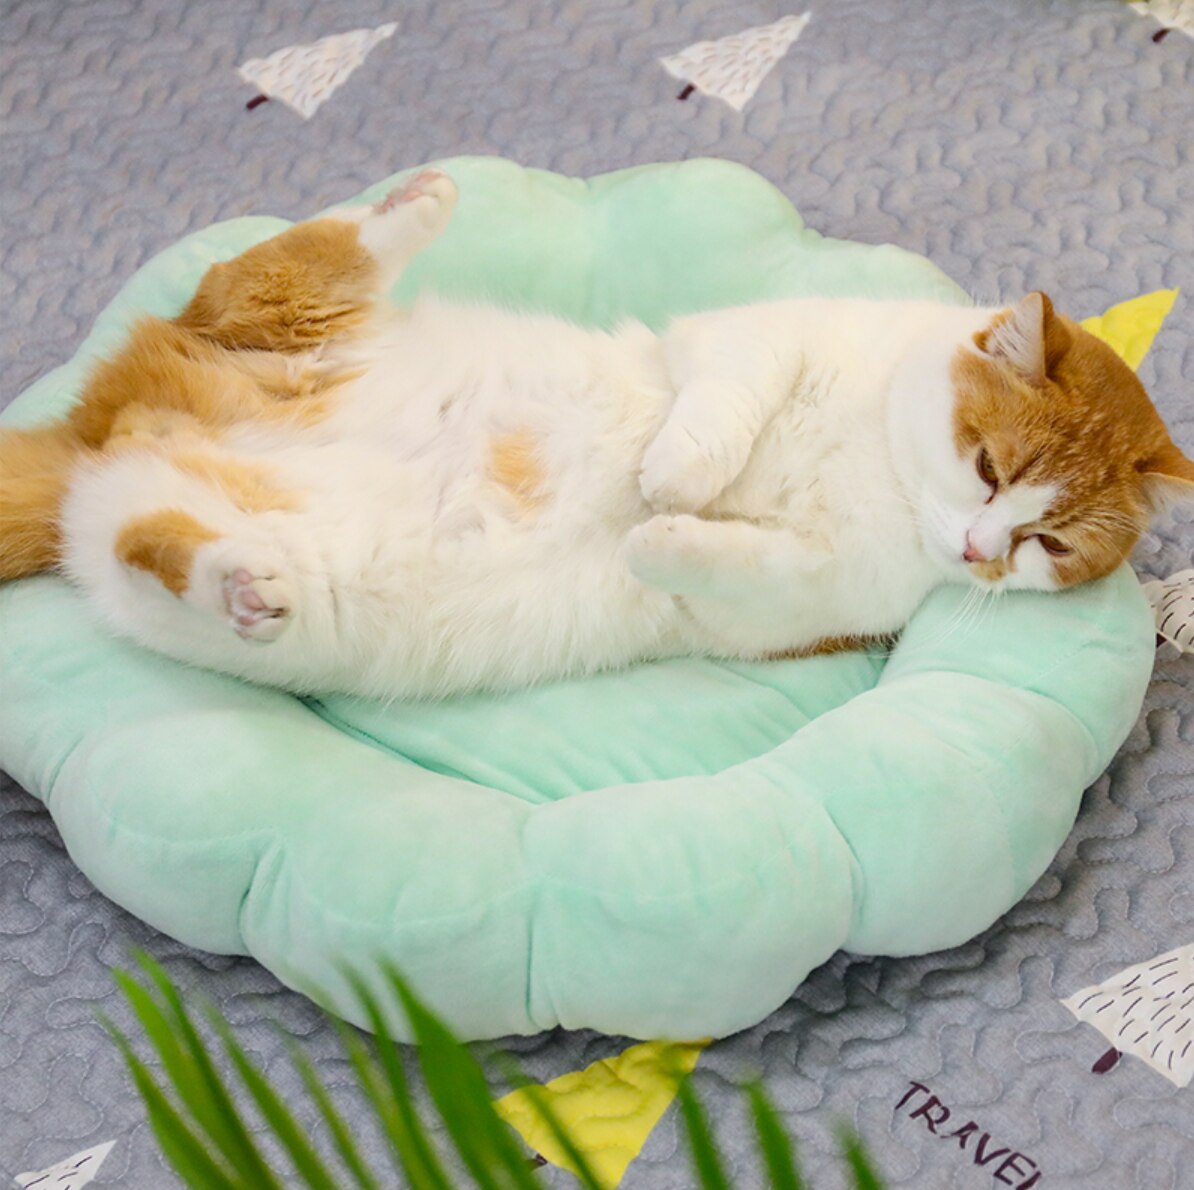 Coussin doux en forme de fleur pour chat très confortable avec un chat qui dort au-dessus dans une maison